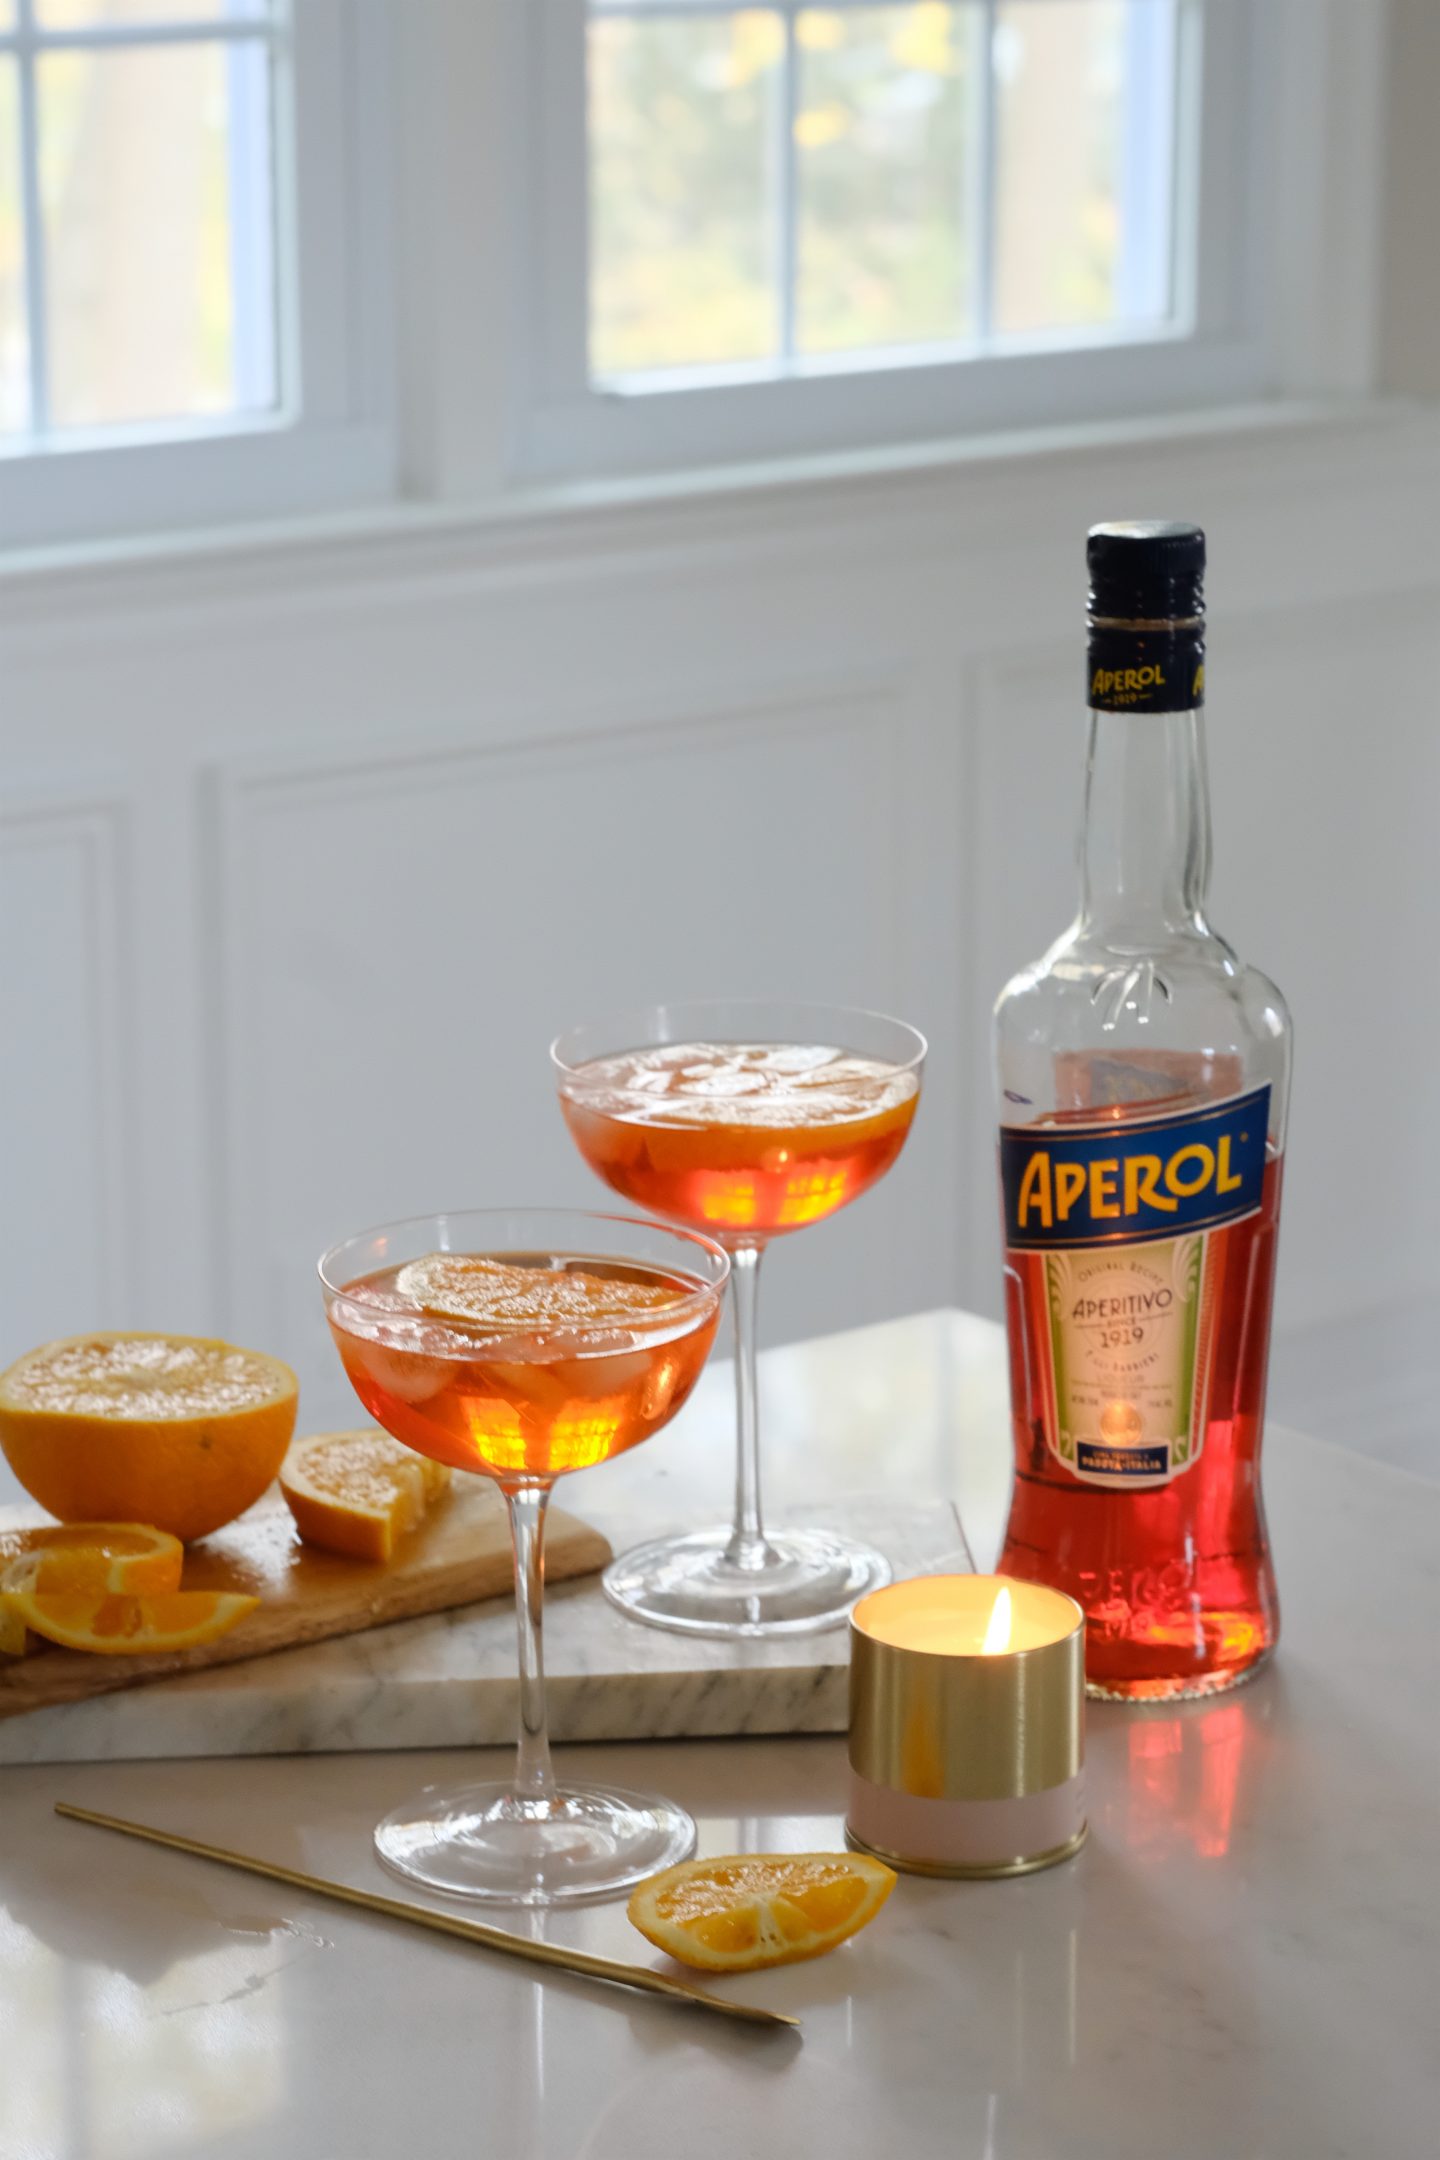 classic recipe for Aperol Spritz orange liquor in wine glasses. 